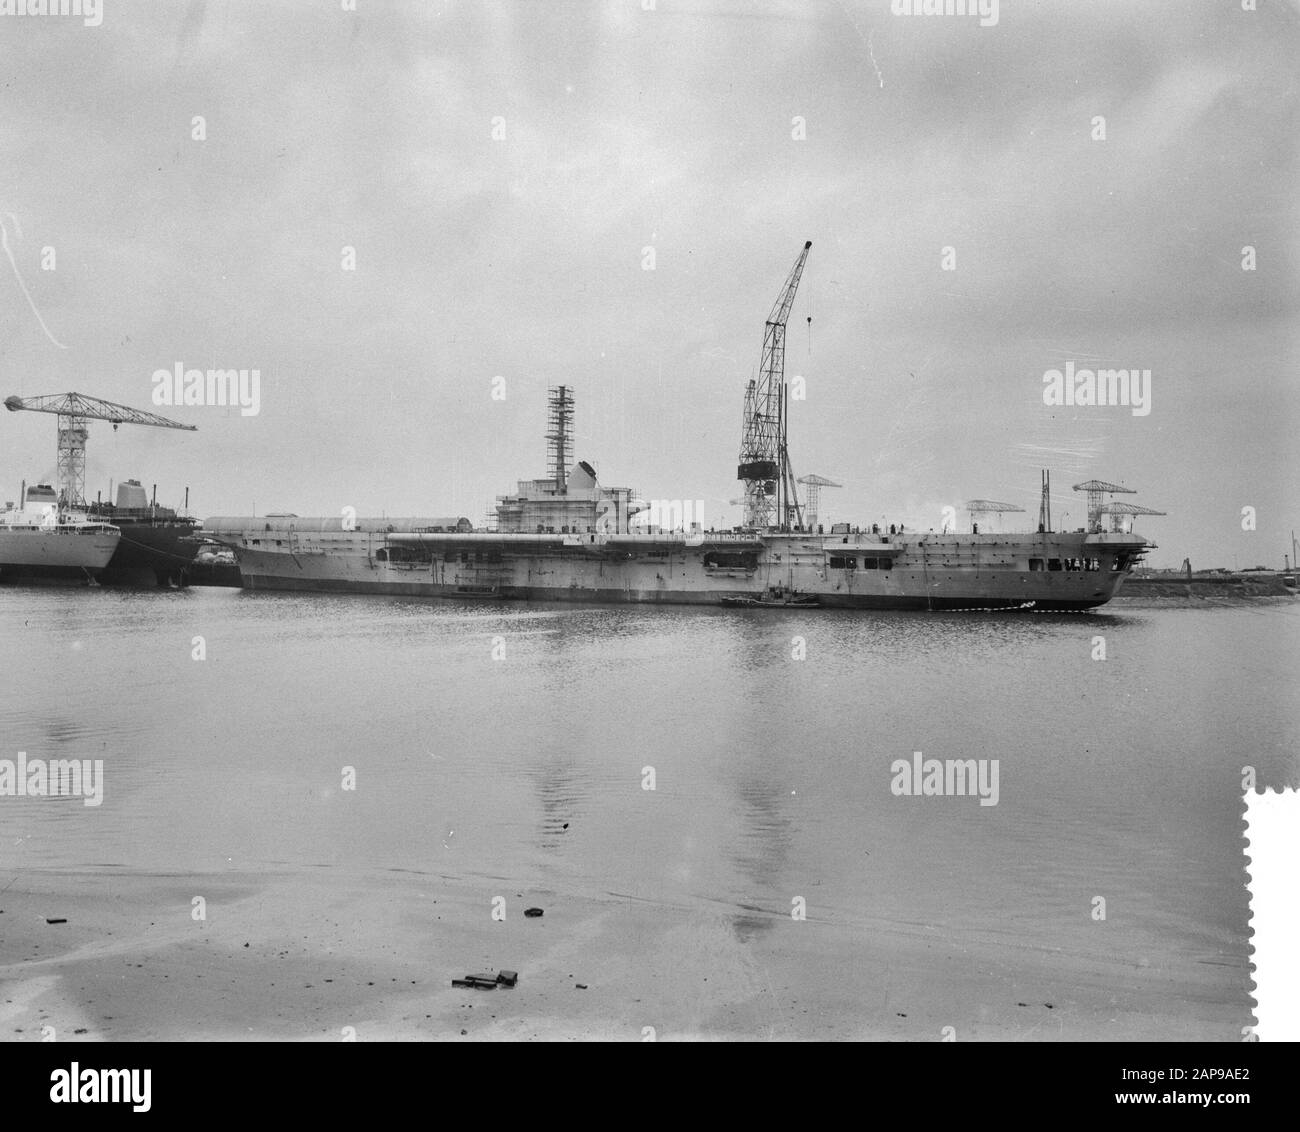 Incendio in nave brasiliana nel porto di Rotterdam Data: 14 novembre 1959 Ubicazione: Rotterdam, Olanda del Sud Parole Chiave: Incendi, porti, navi Foto Stock